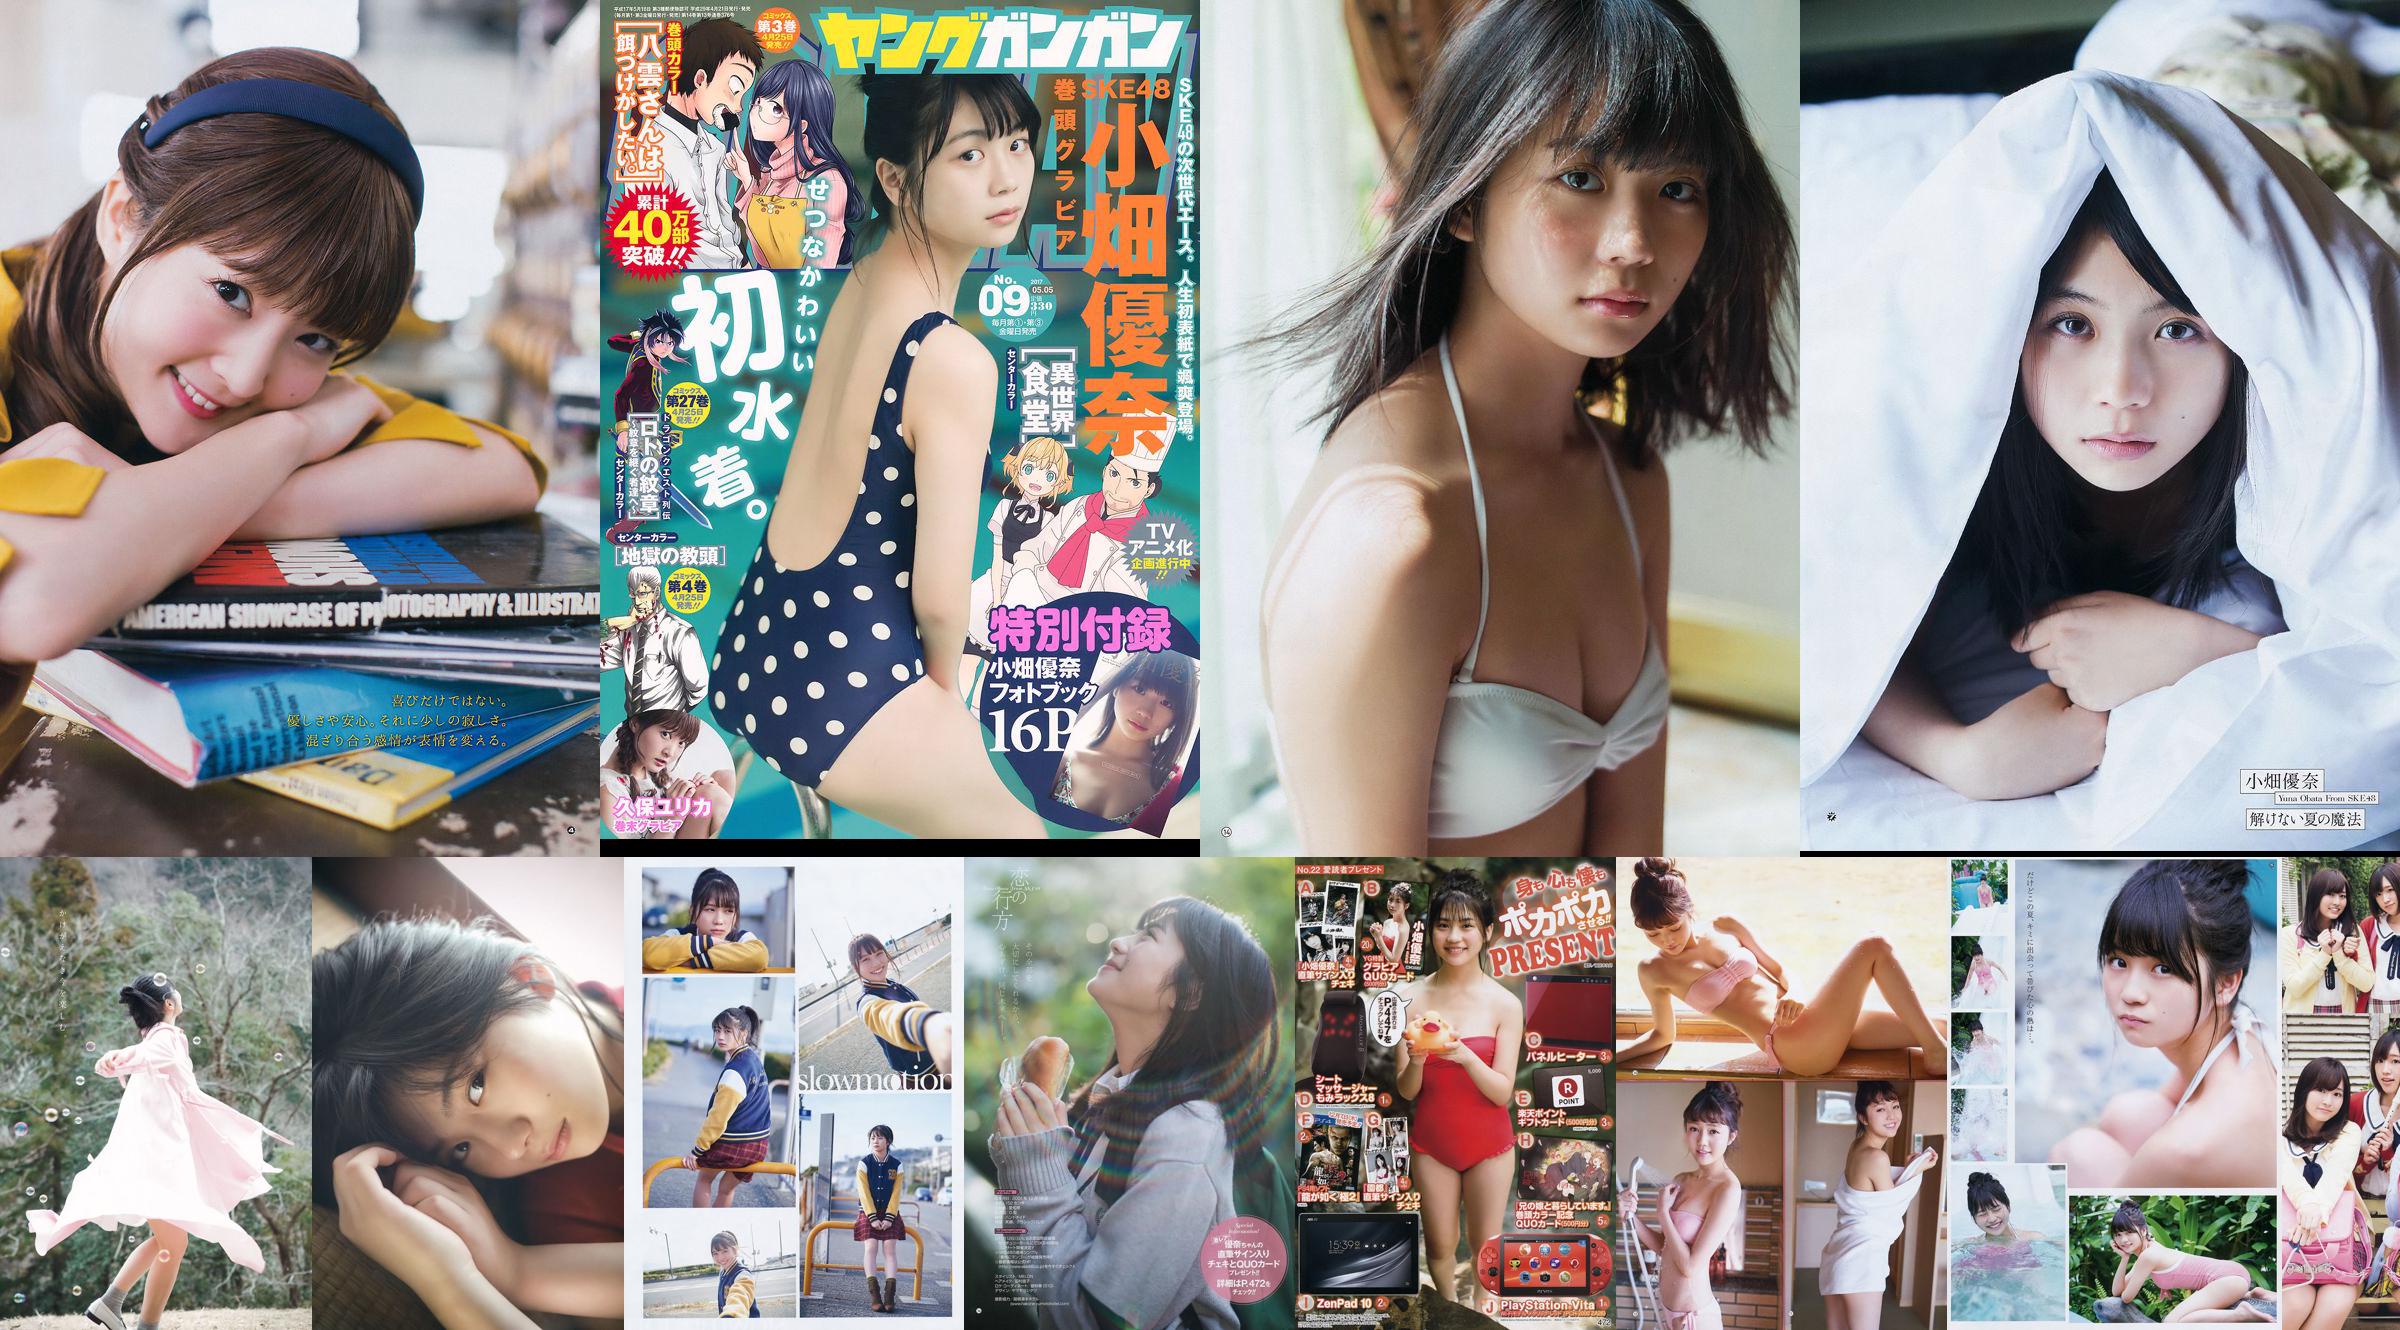 [Young Gangan] Yuna Obata Mina Oba Yume Hayashi 2018 No.12 Photo Magazine No.726daa Page 2